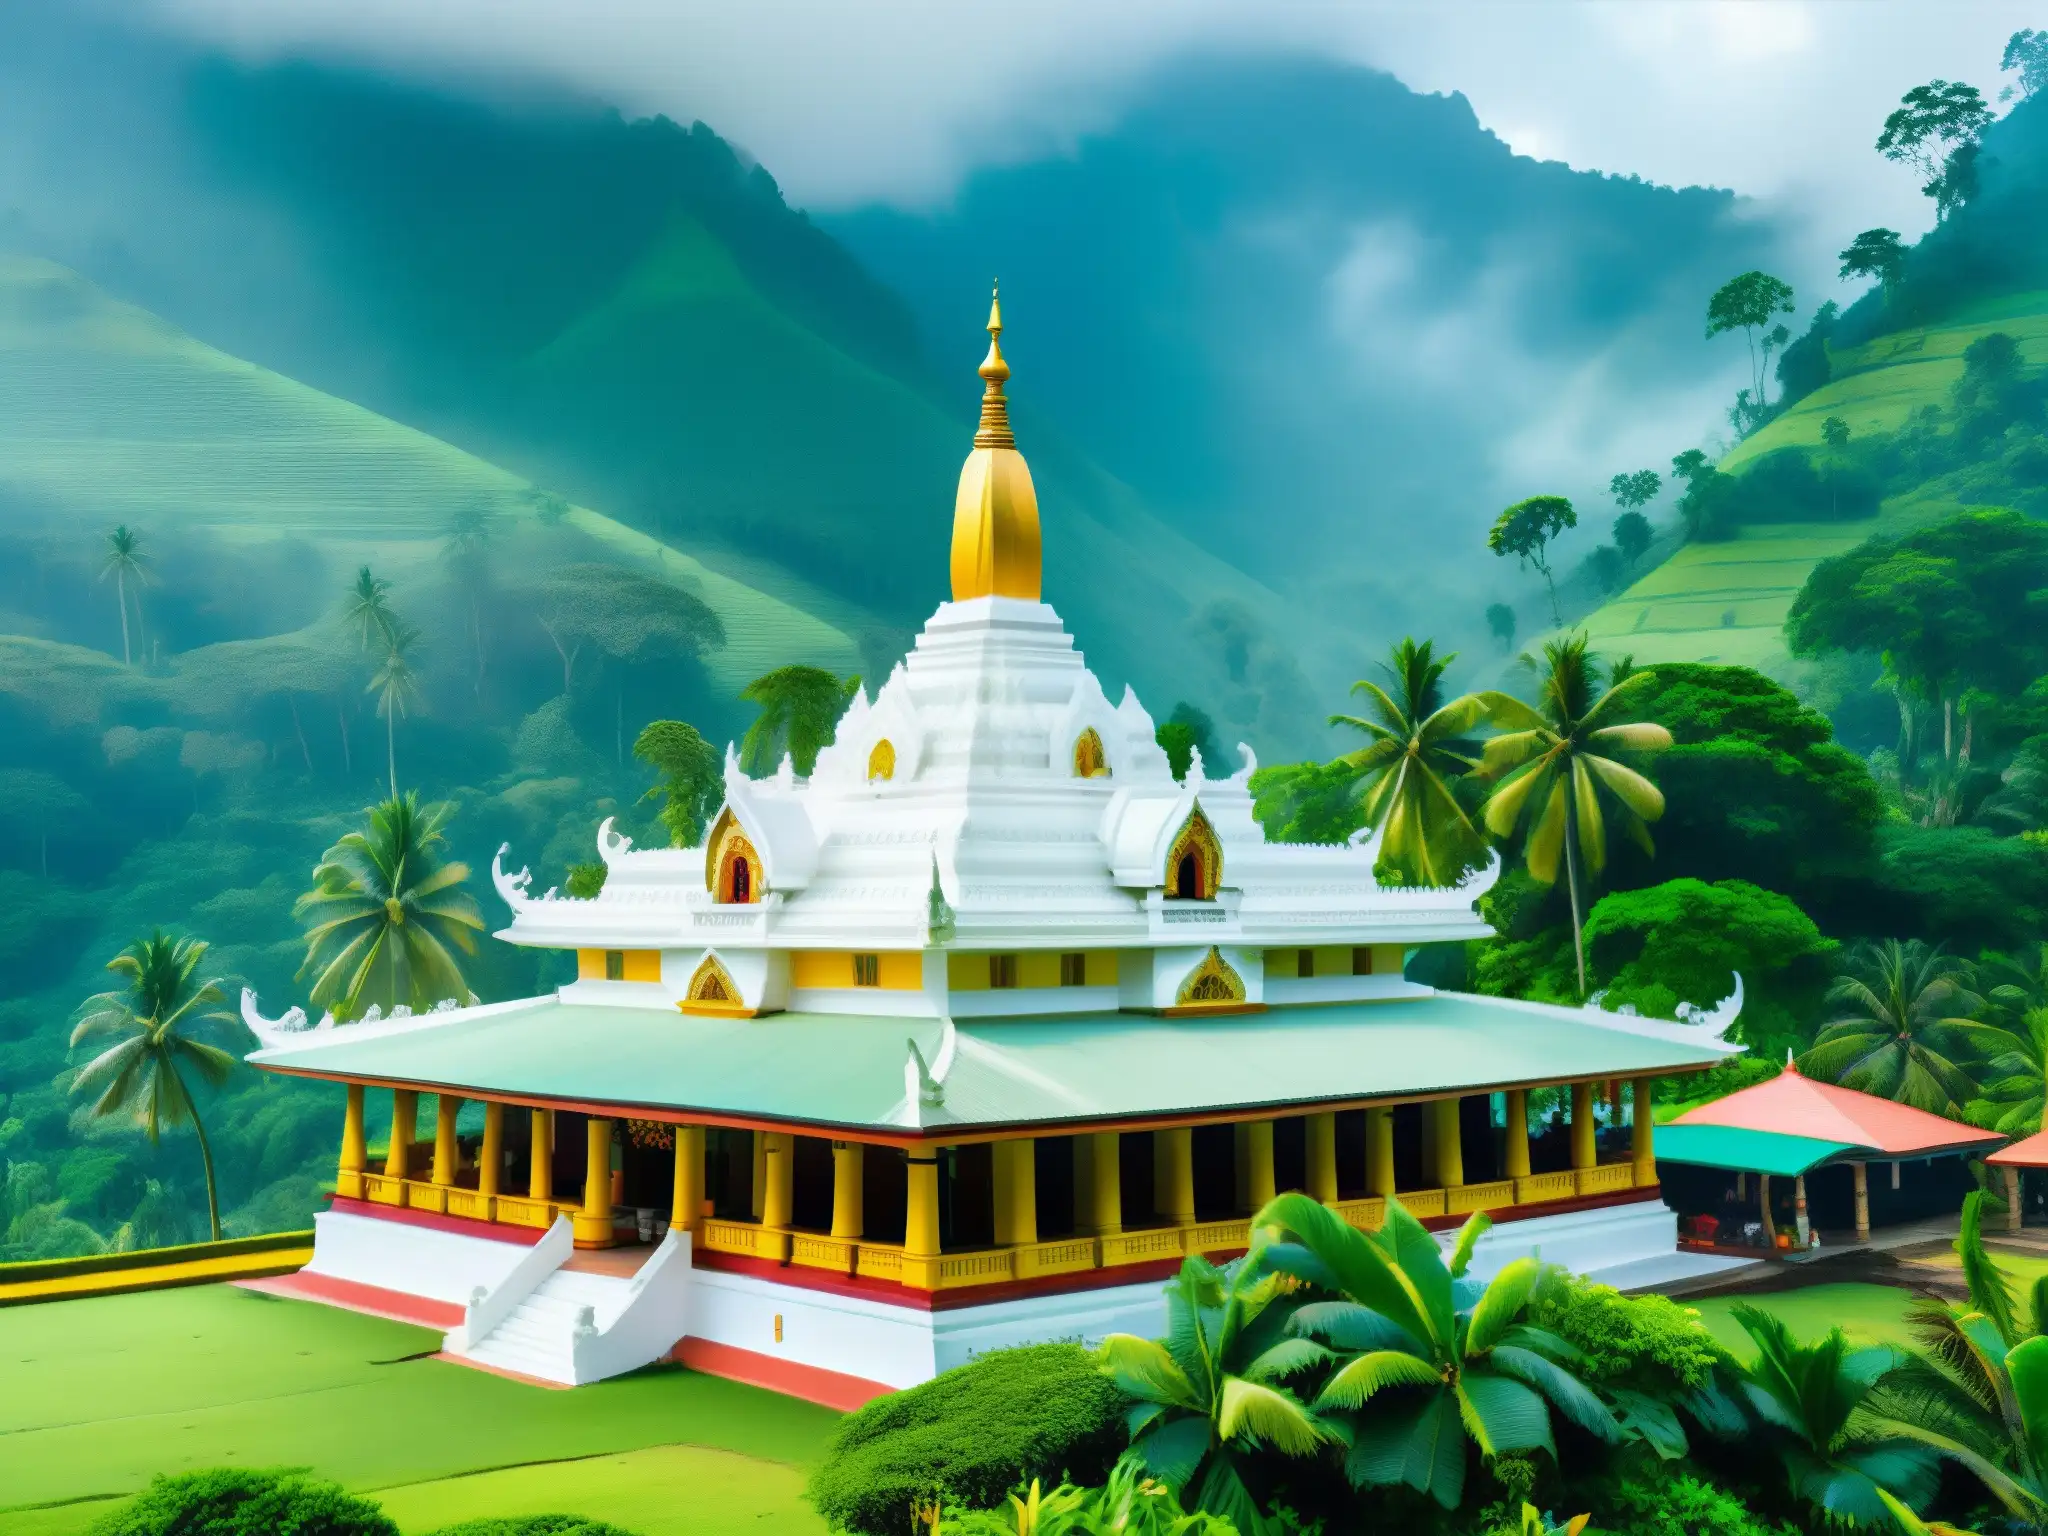 Templo tradicional en Sri Lanka con influencia misticismo diosa blanca, rodeado de naturaleza exuberante y montañas cubiertas de niebla